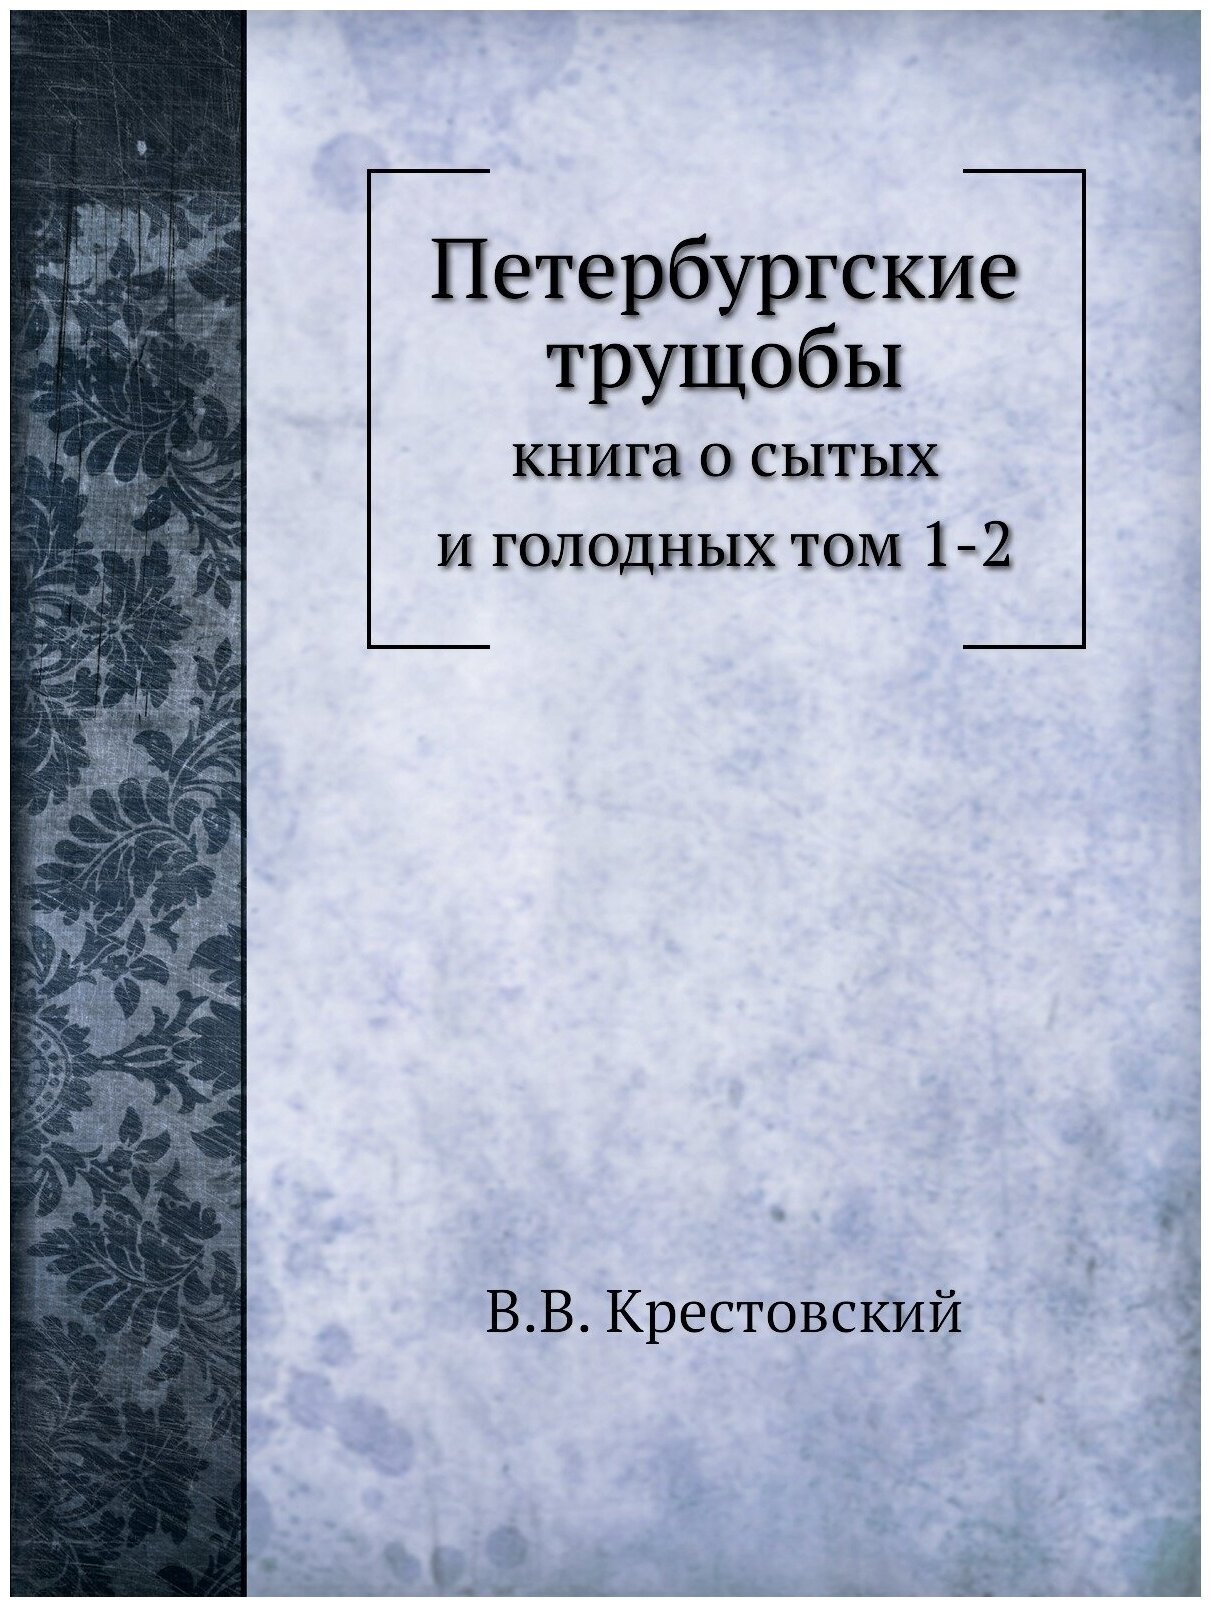 Петербургские трущобы. книга о сытых и голодных том 1-2